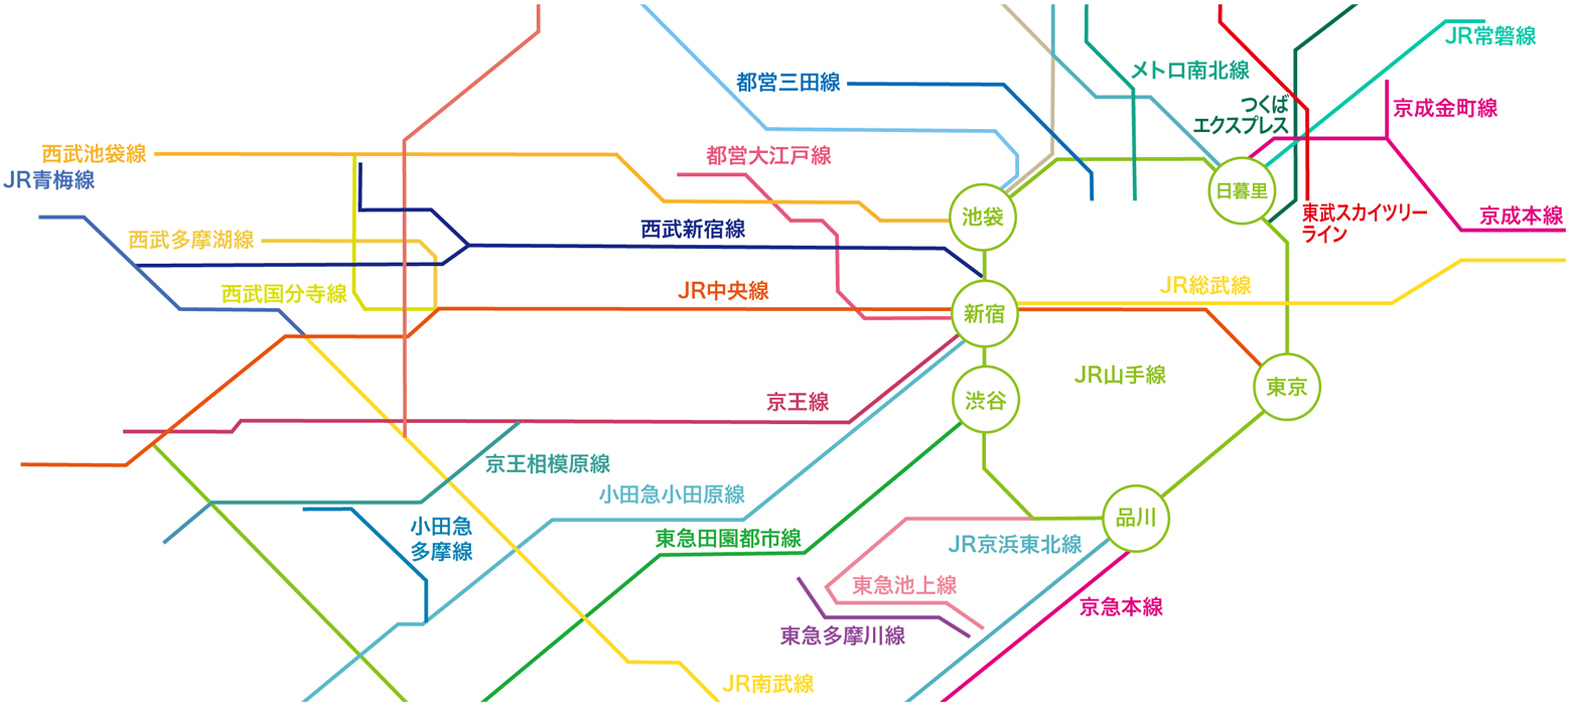 東京都の路線図